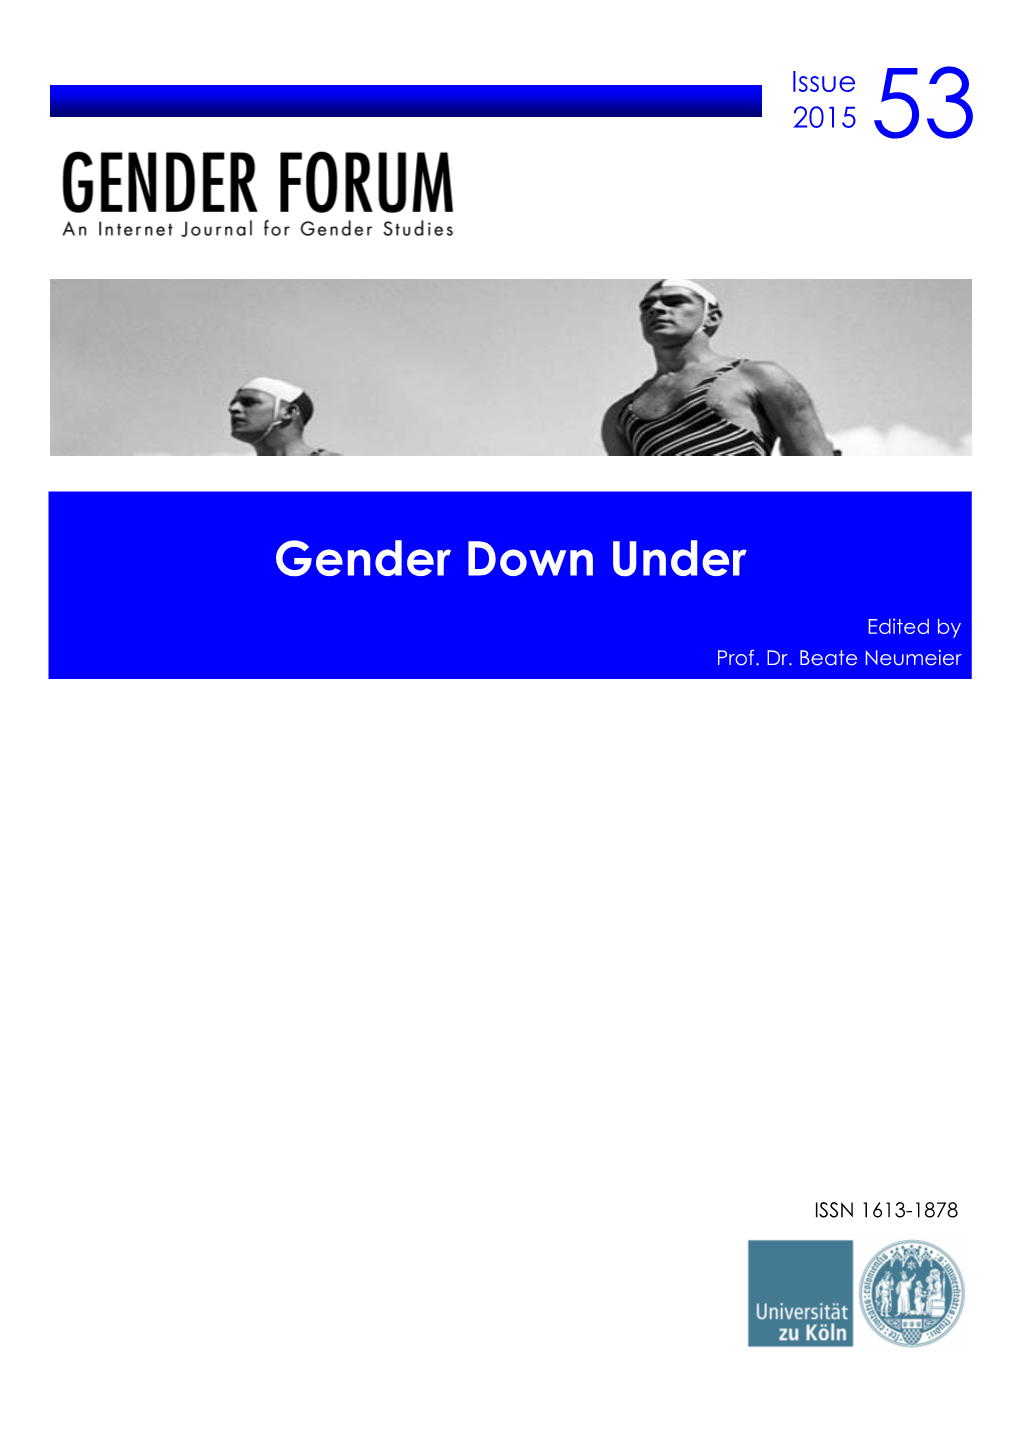 Gender Down Under